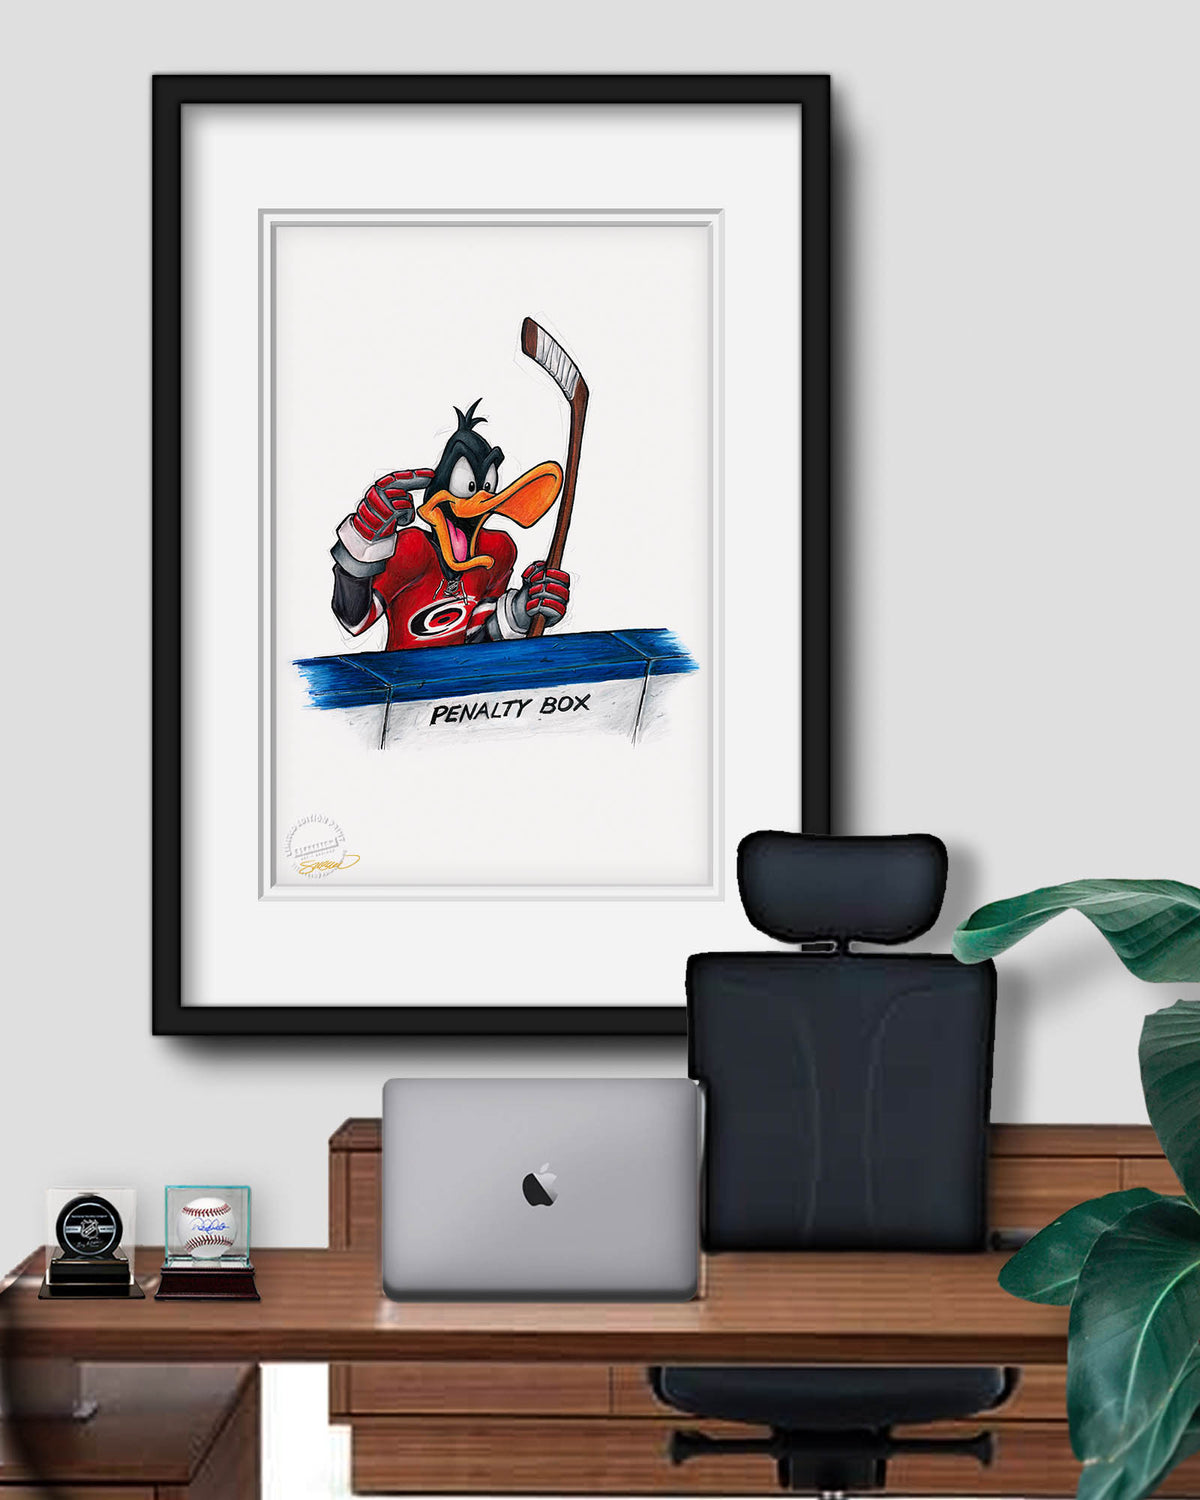 Duck Season Hockey Season x NHL Hurricanes Daffy Duck Limited Edition Fine Art Print